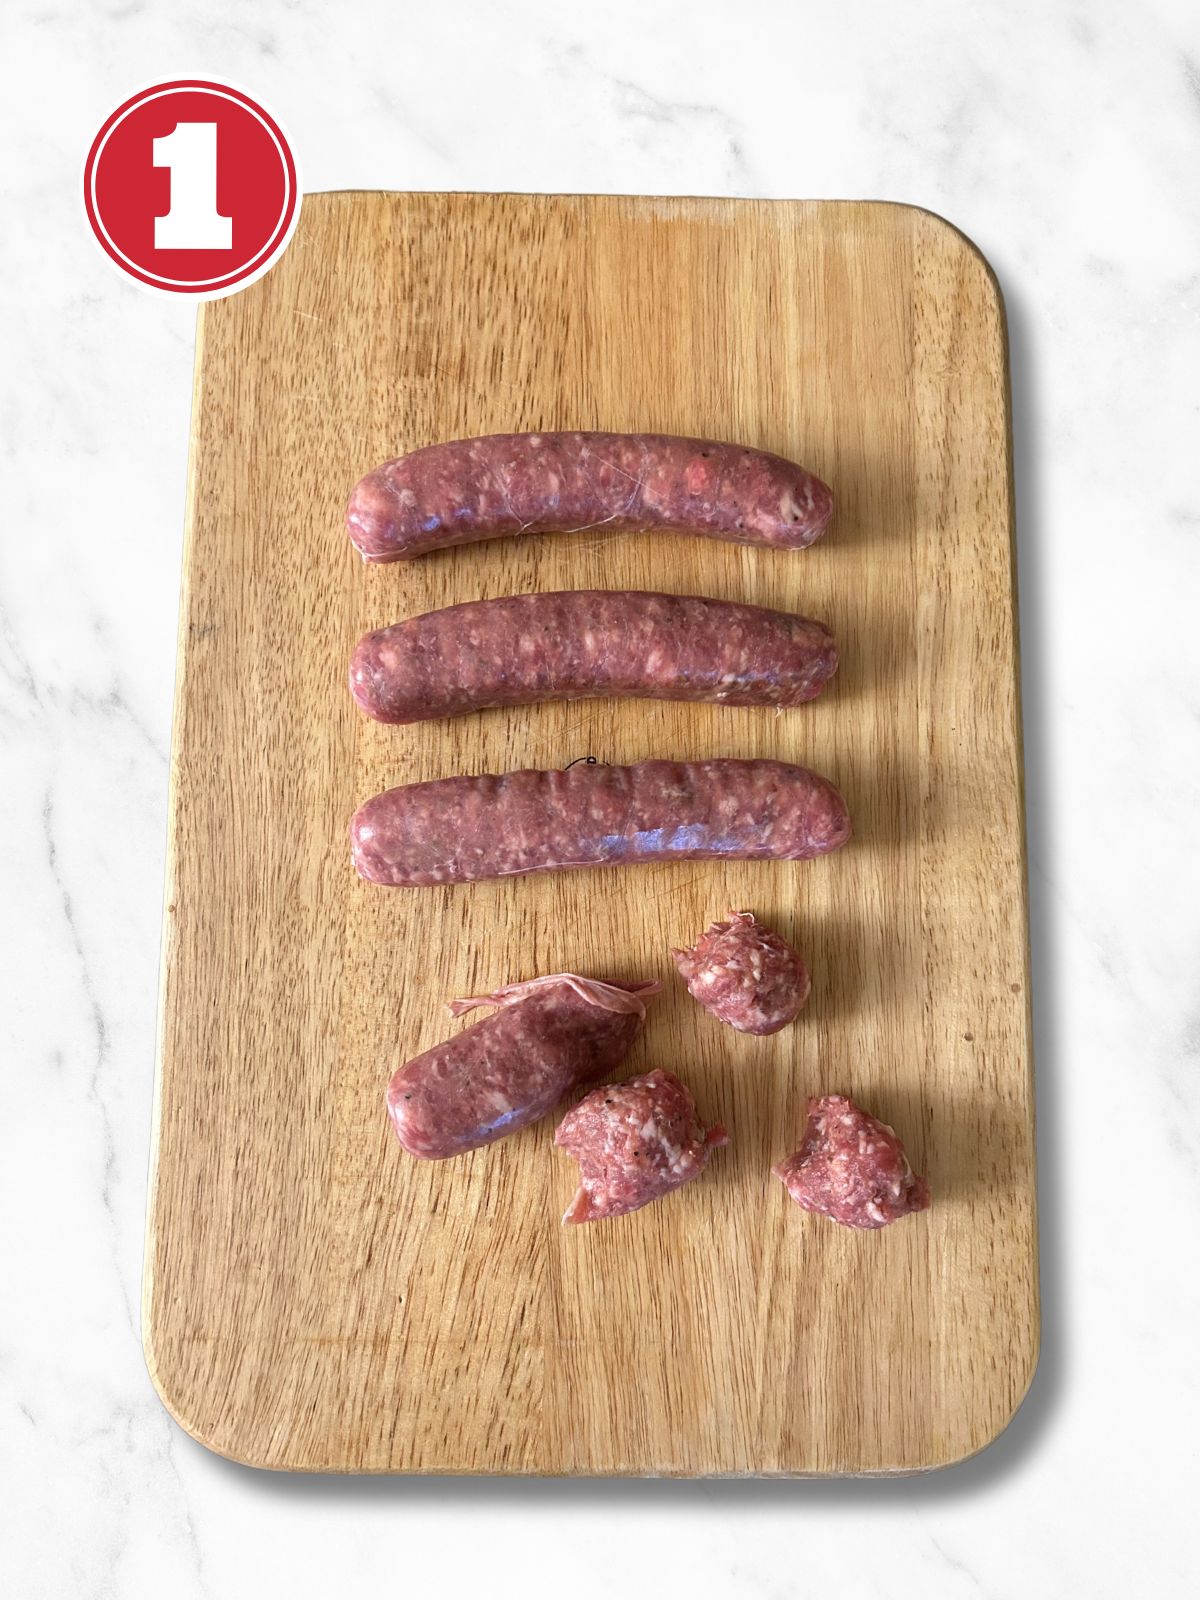 italian sausage on a cutting board